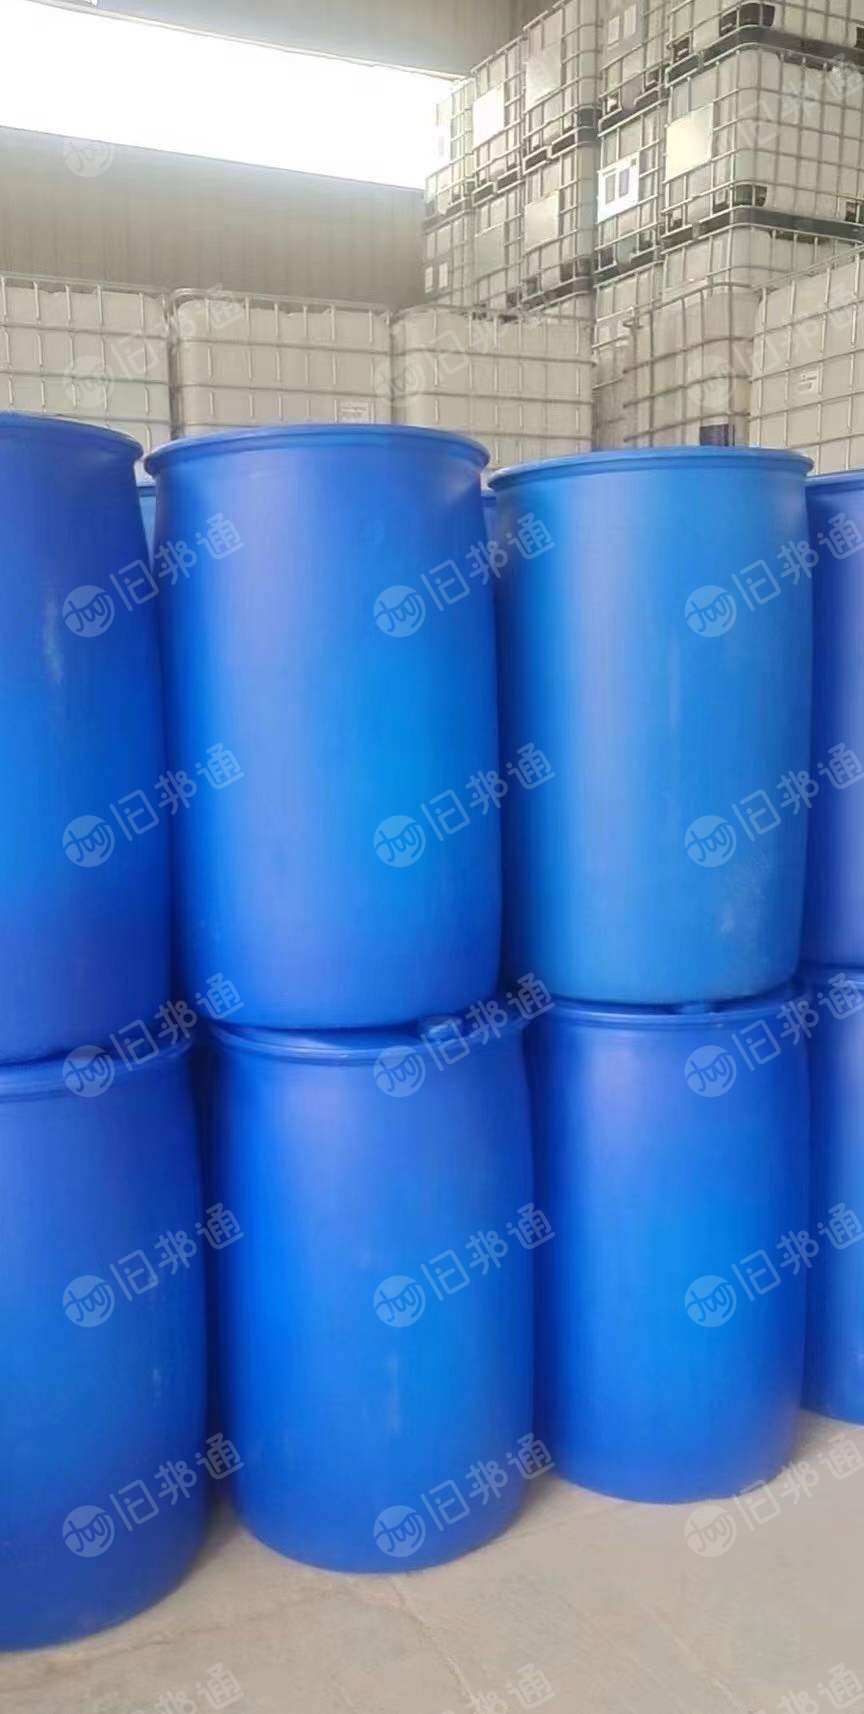 常年出售二手吨桶、法兰桶、大蓝桶